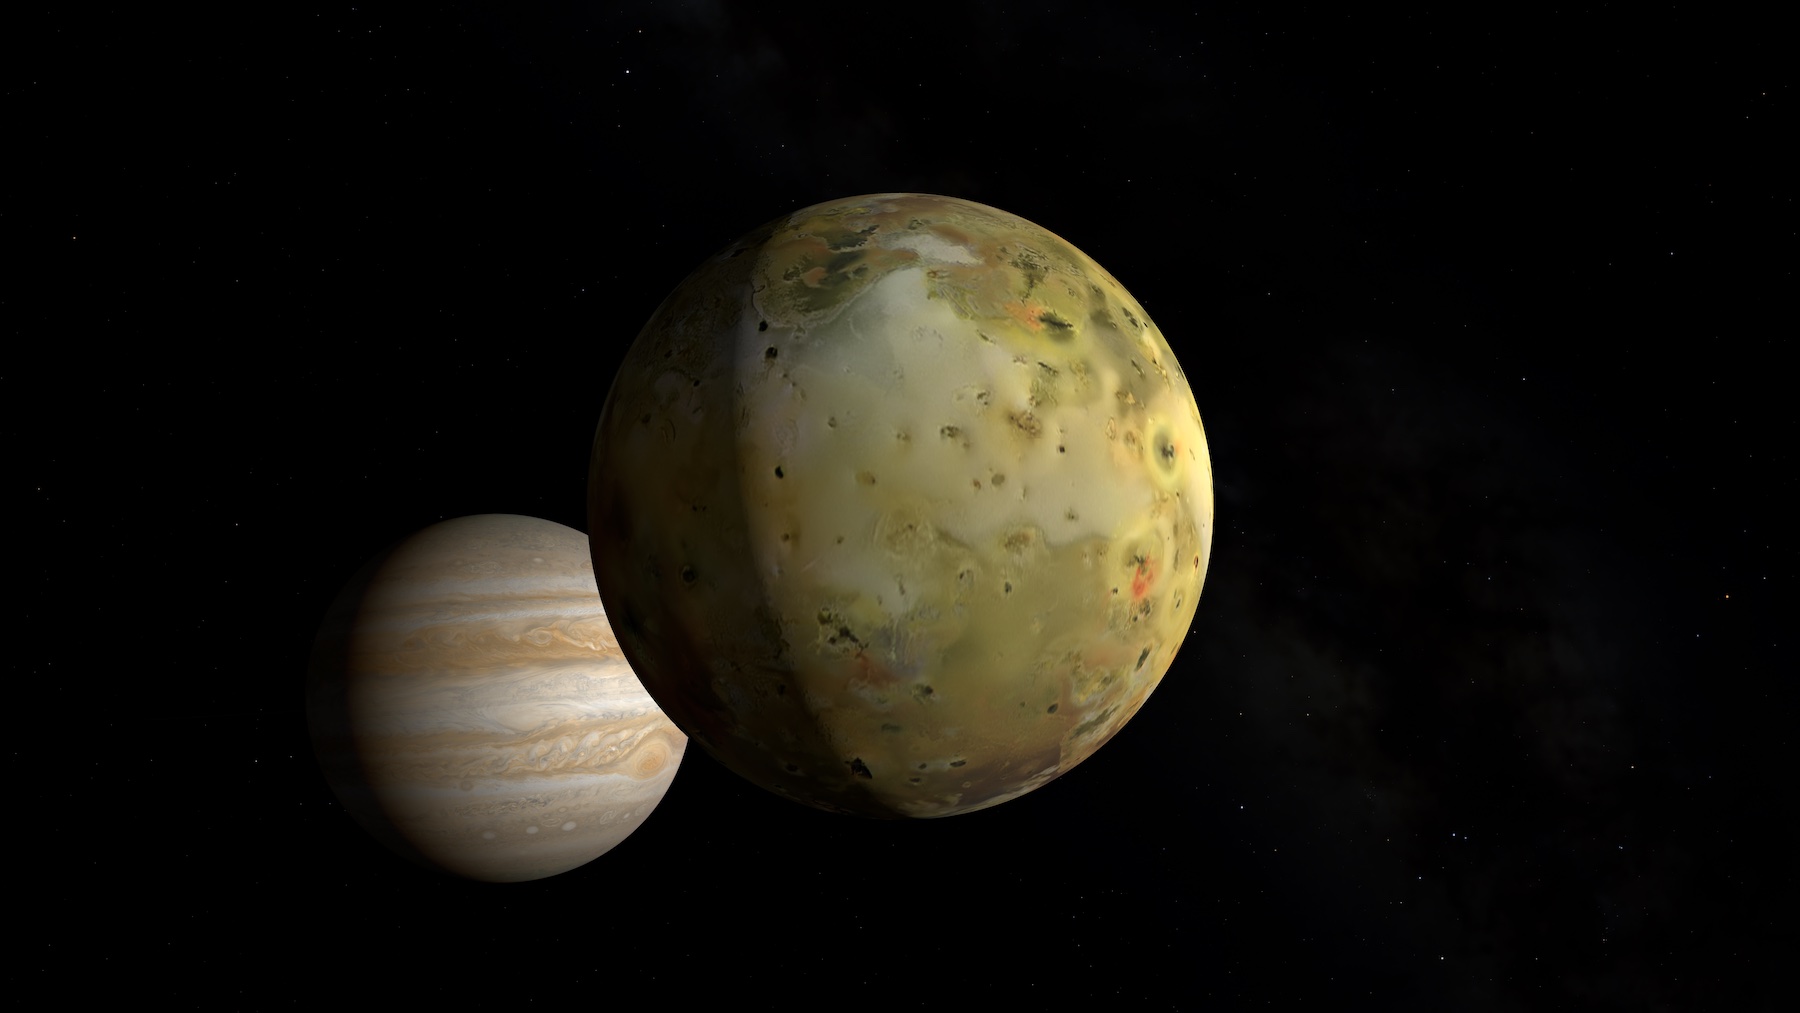 Jupiter's moon, Io